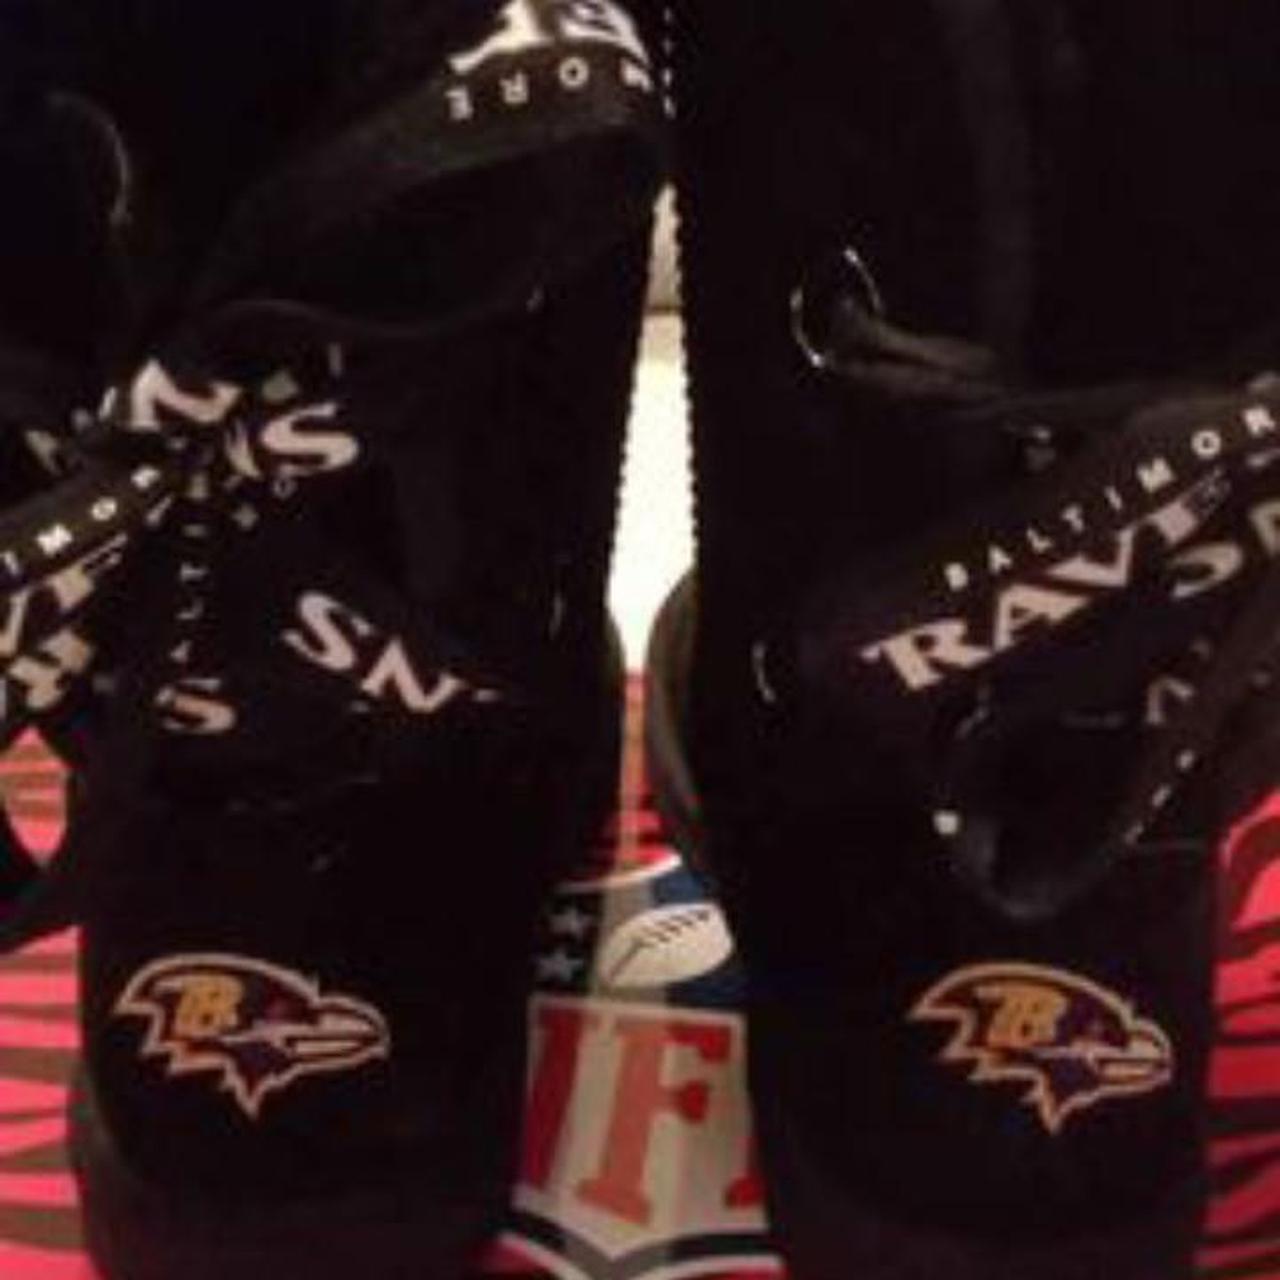 NFL Baltimore Ravens Pull-on Fur Boots-Size... - Depop